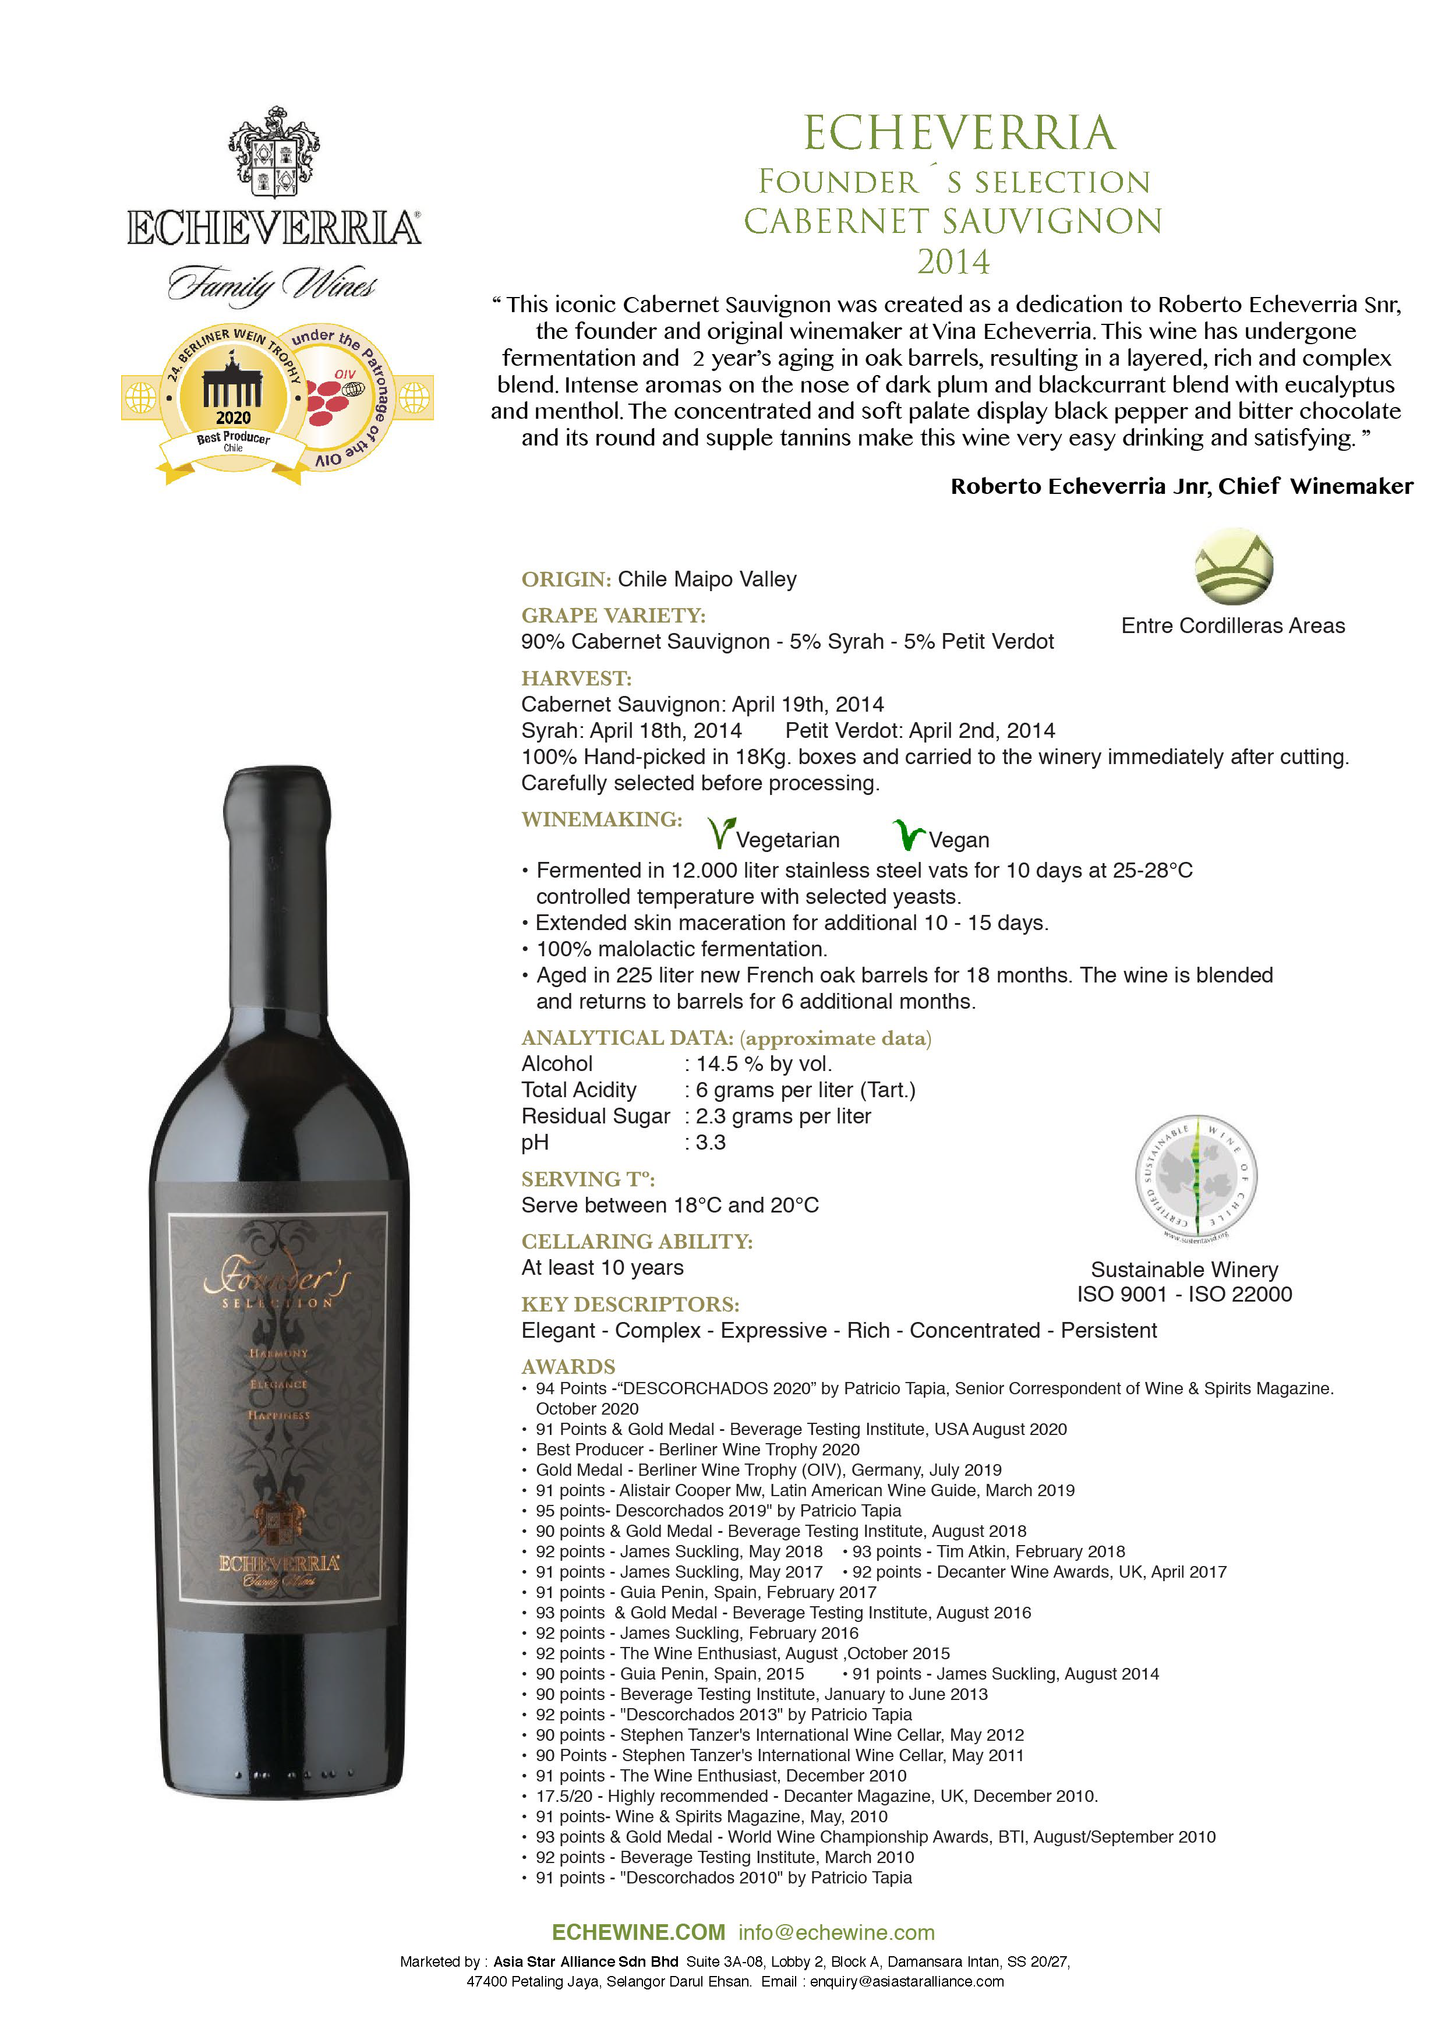 echeverria-founders-selection-cabernet-sauvignon-2014